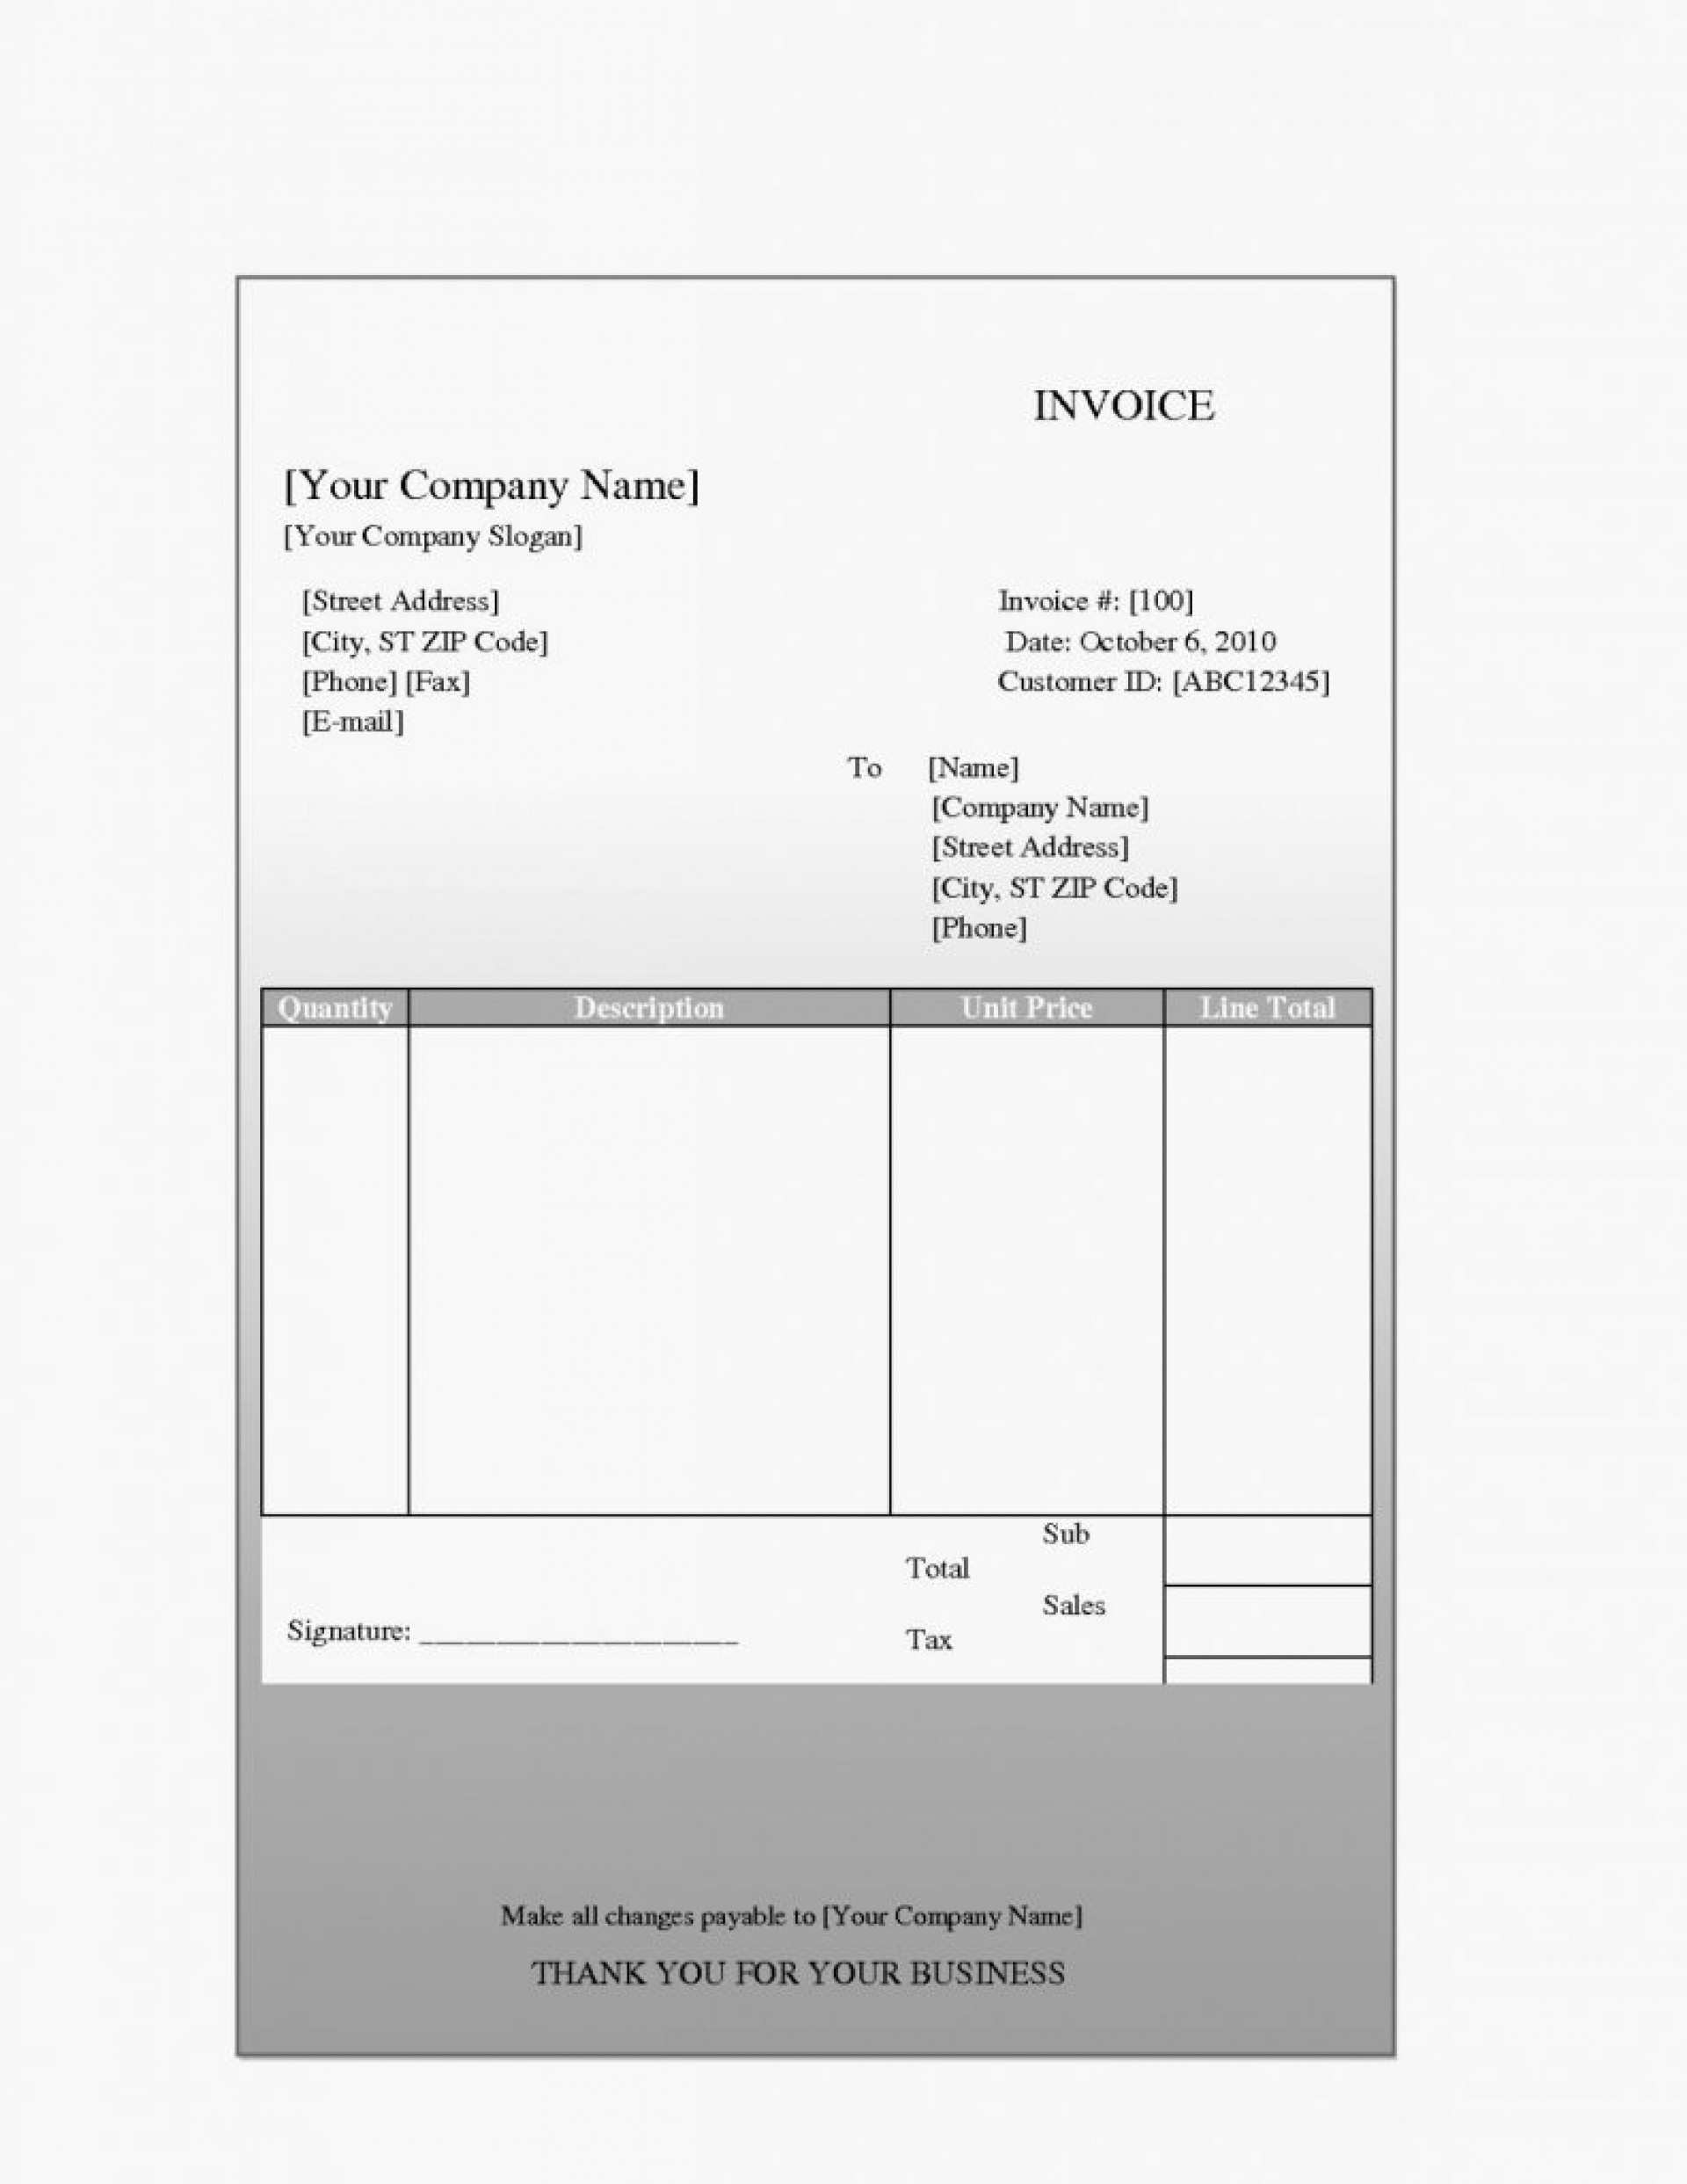 invoice pdf download